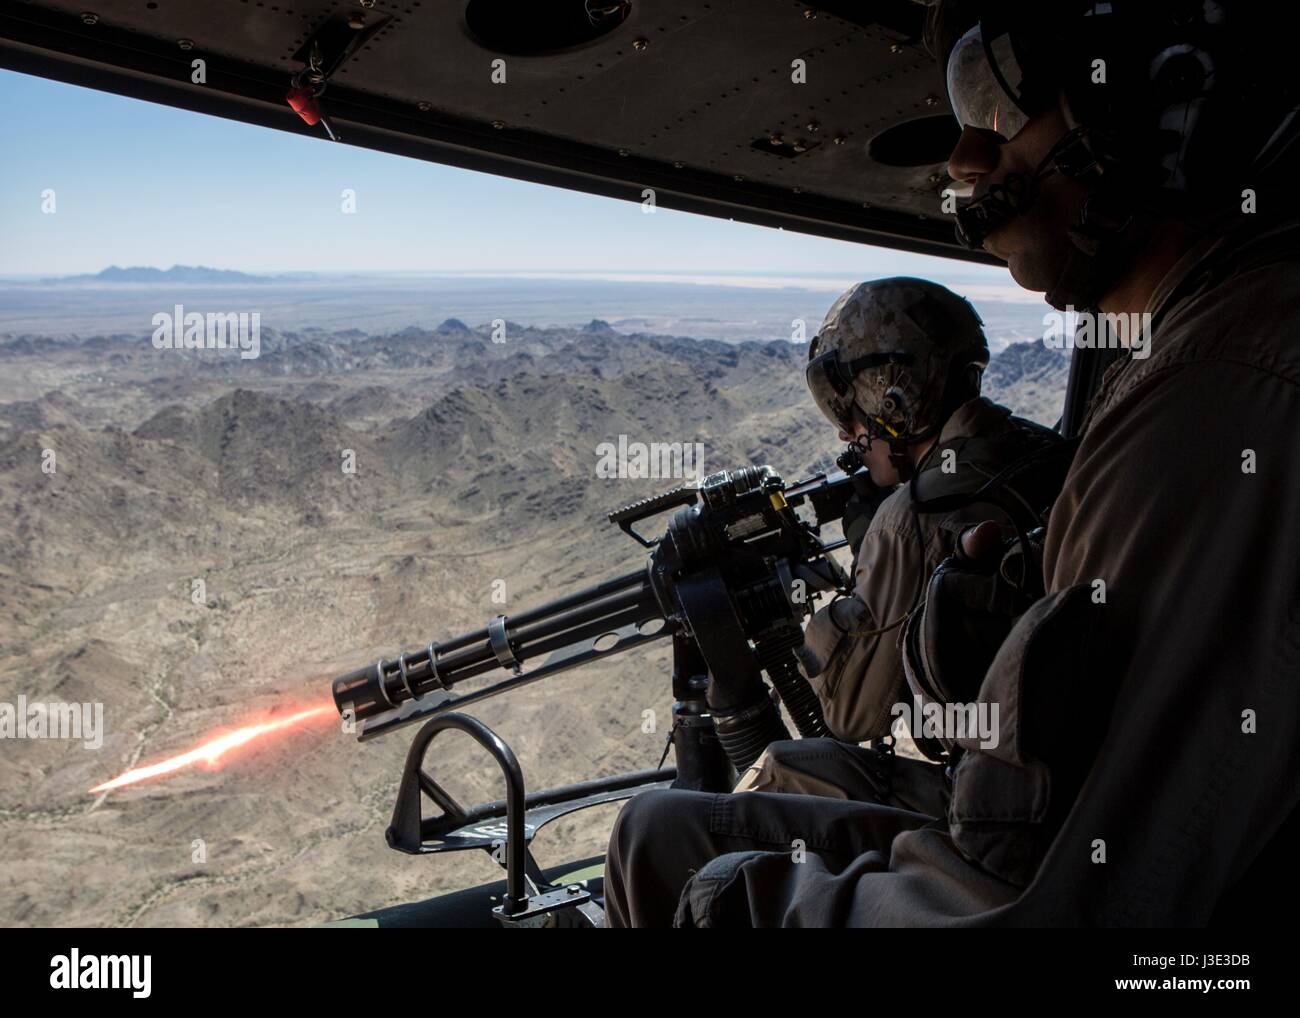 Les soldats U.S. Marine fire un GAU-17 canon mitrailleuse Gatling Vulcain d'un USMC UH-1Y Venom hélicoptère pendant un exercice de tir aérien à la montagne de chocolat de tir aérien le 5 avril 2017 en Californie, Niland. (Photo par Clare J. Shaffer/Marines américains via Planetpix) Banque D'Images